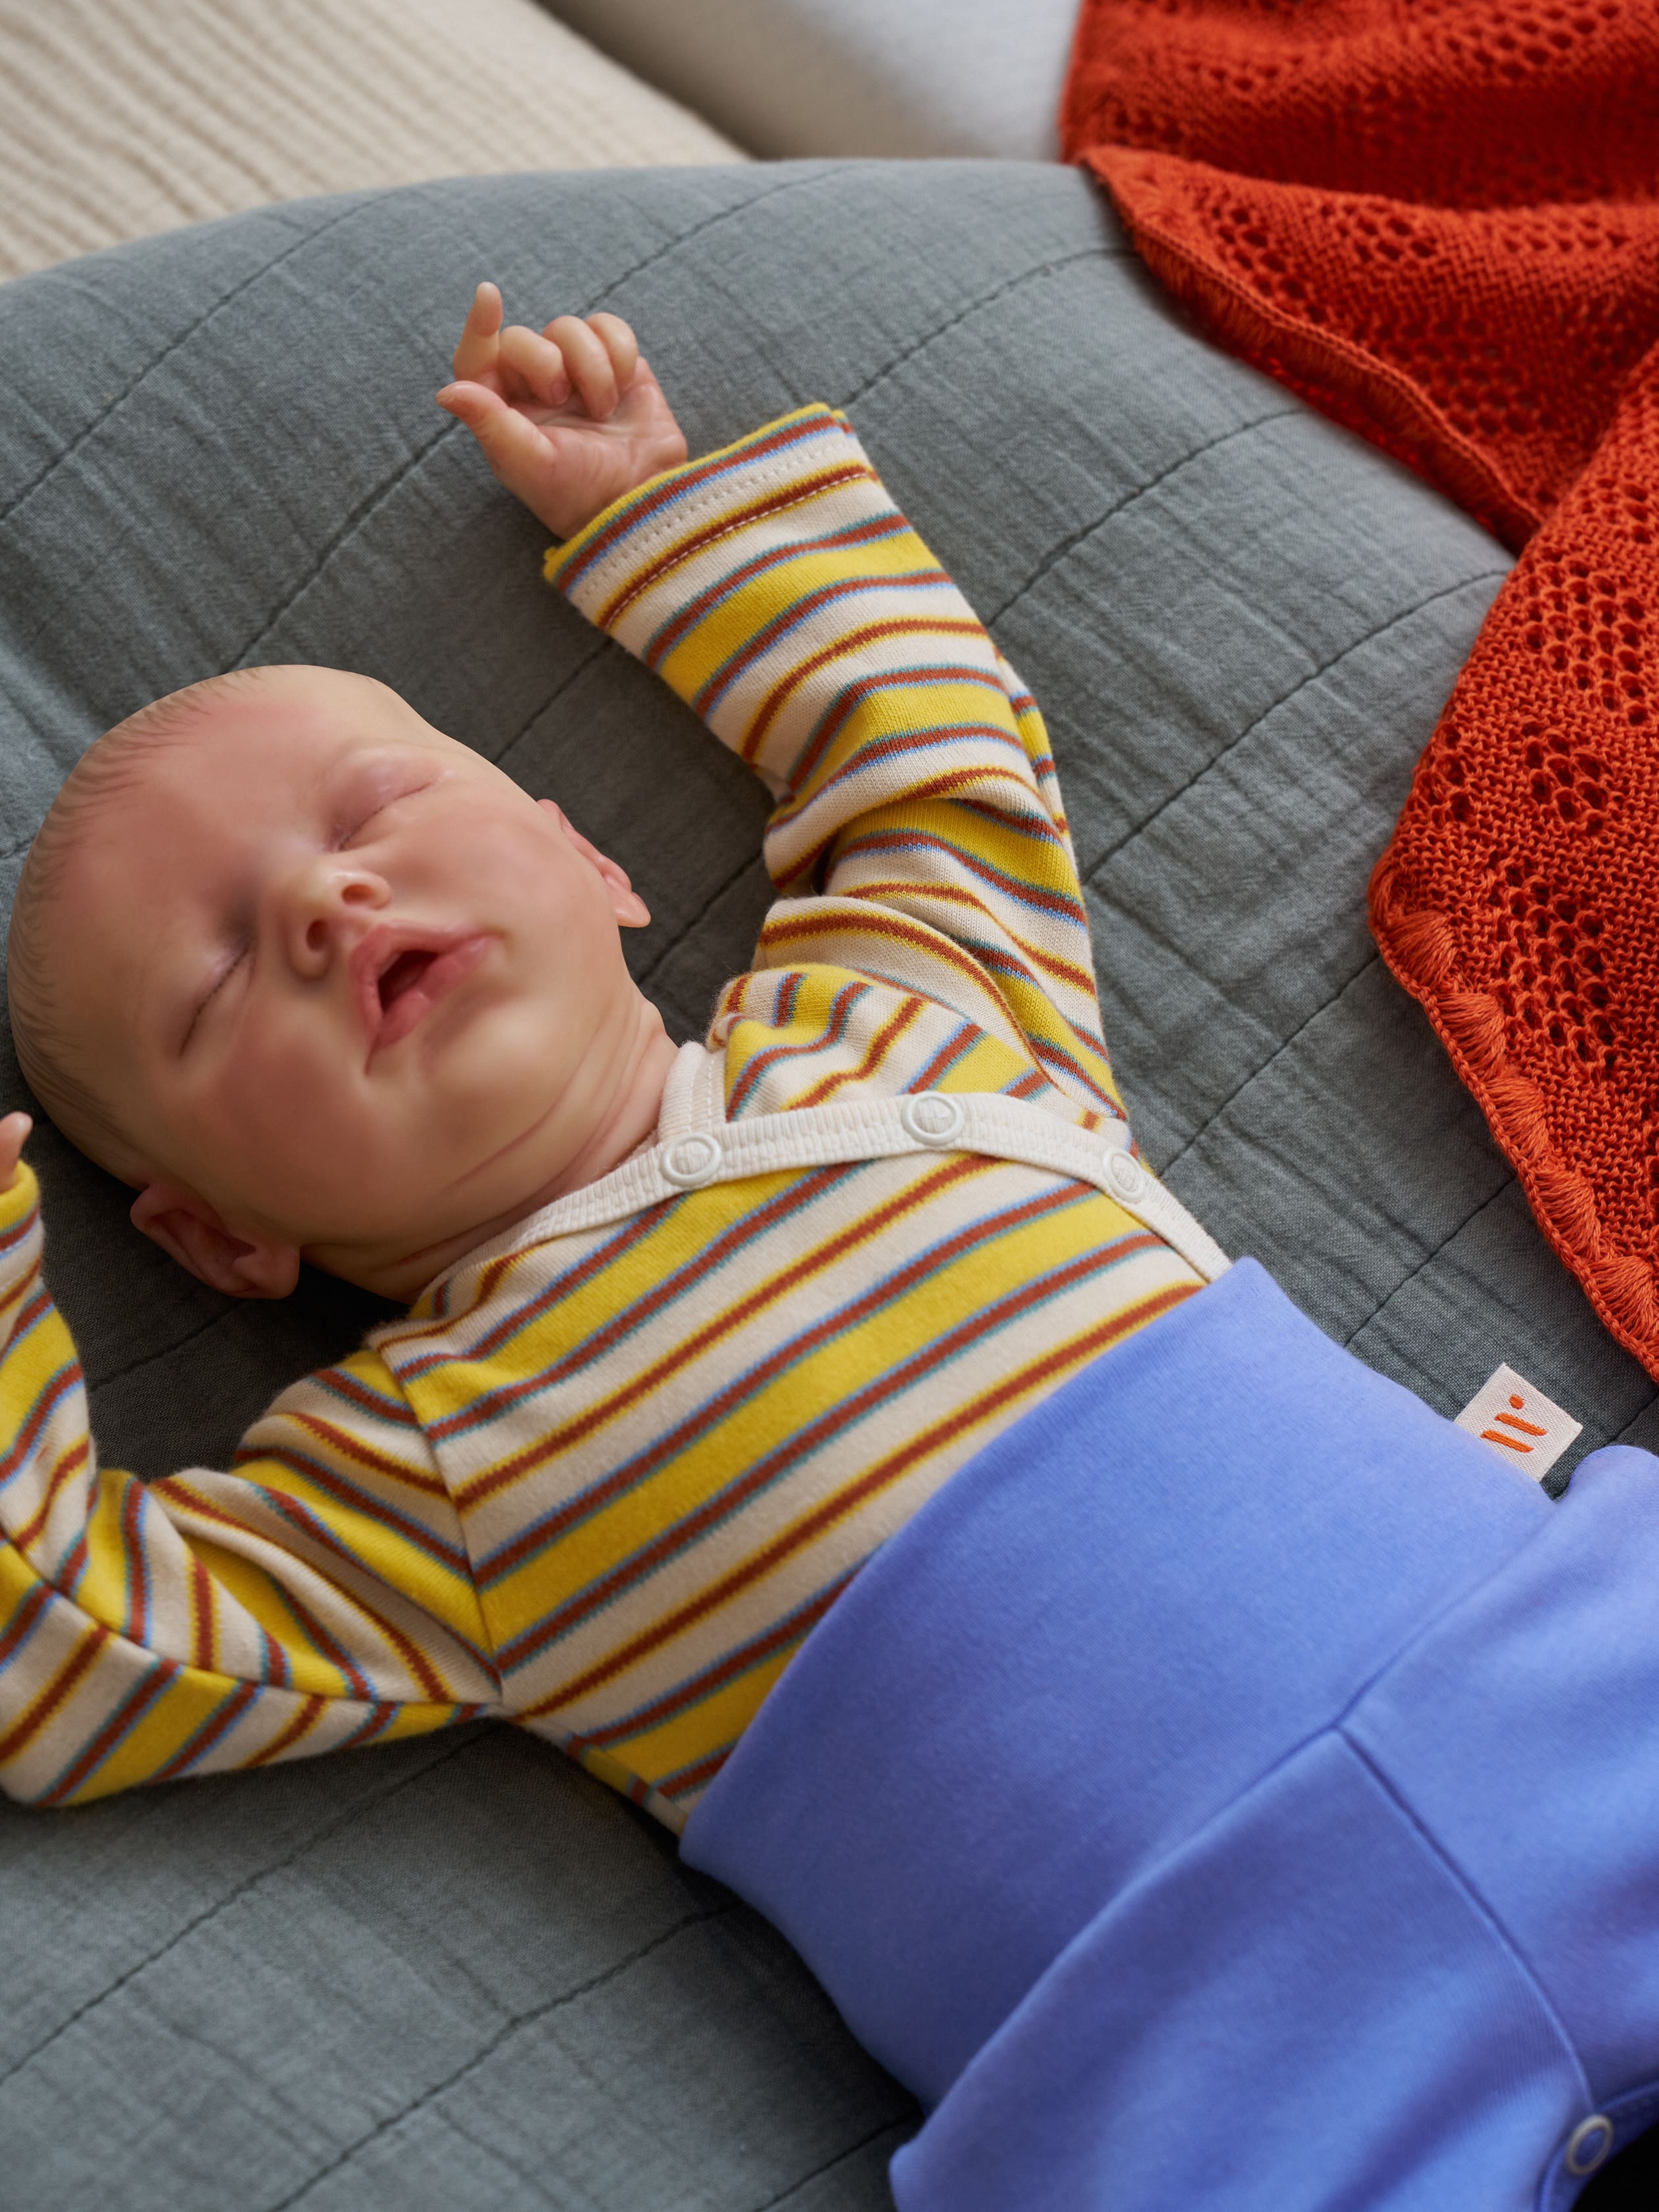 NUEVO - Enterizo con Abertura para Sondas Lumi - con protección contra rasguños y apertura en las mangas, para bebés prematuros y recién nacidos